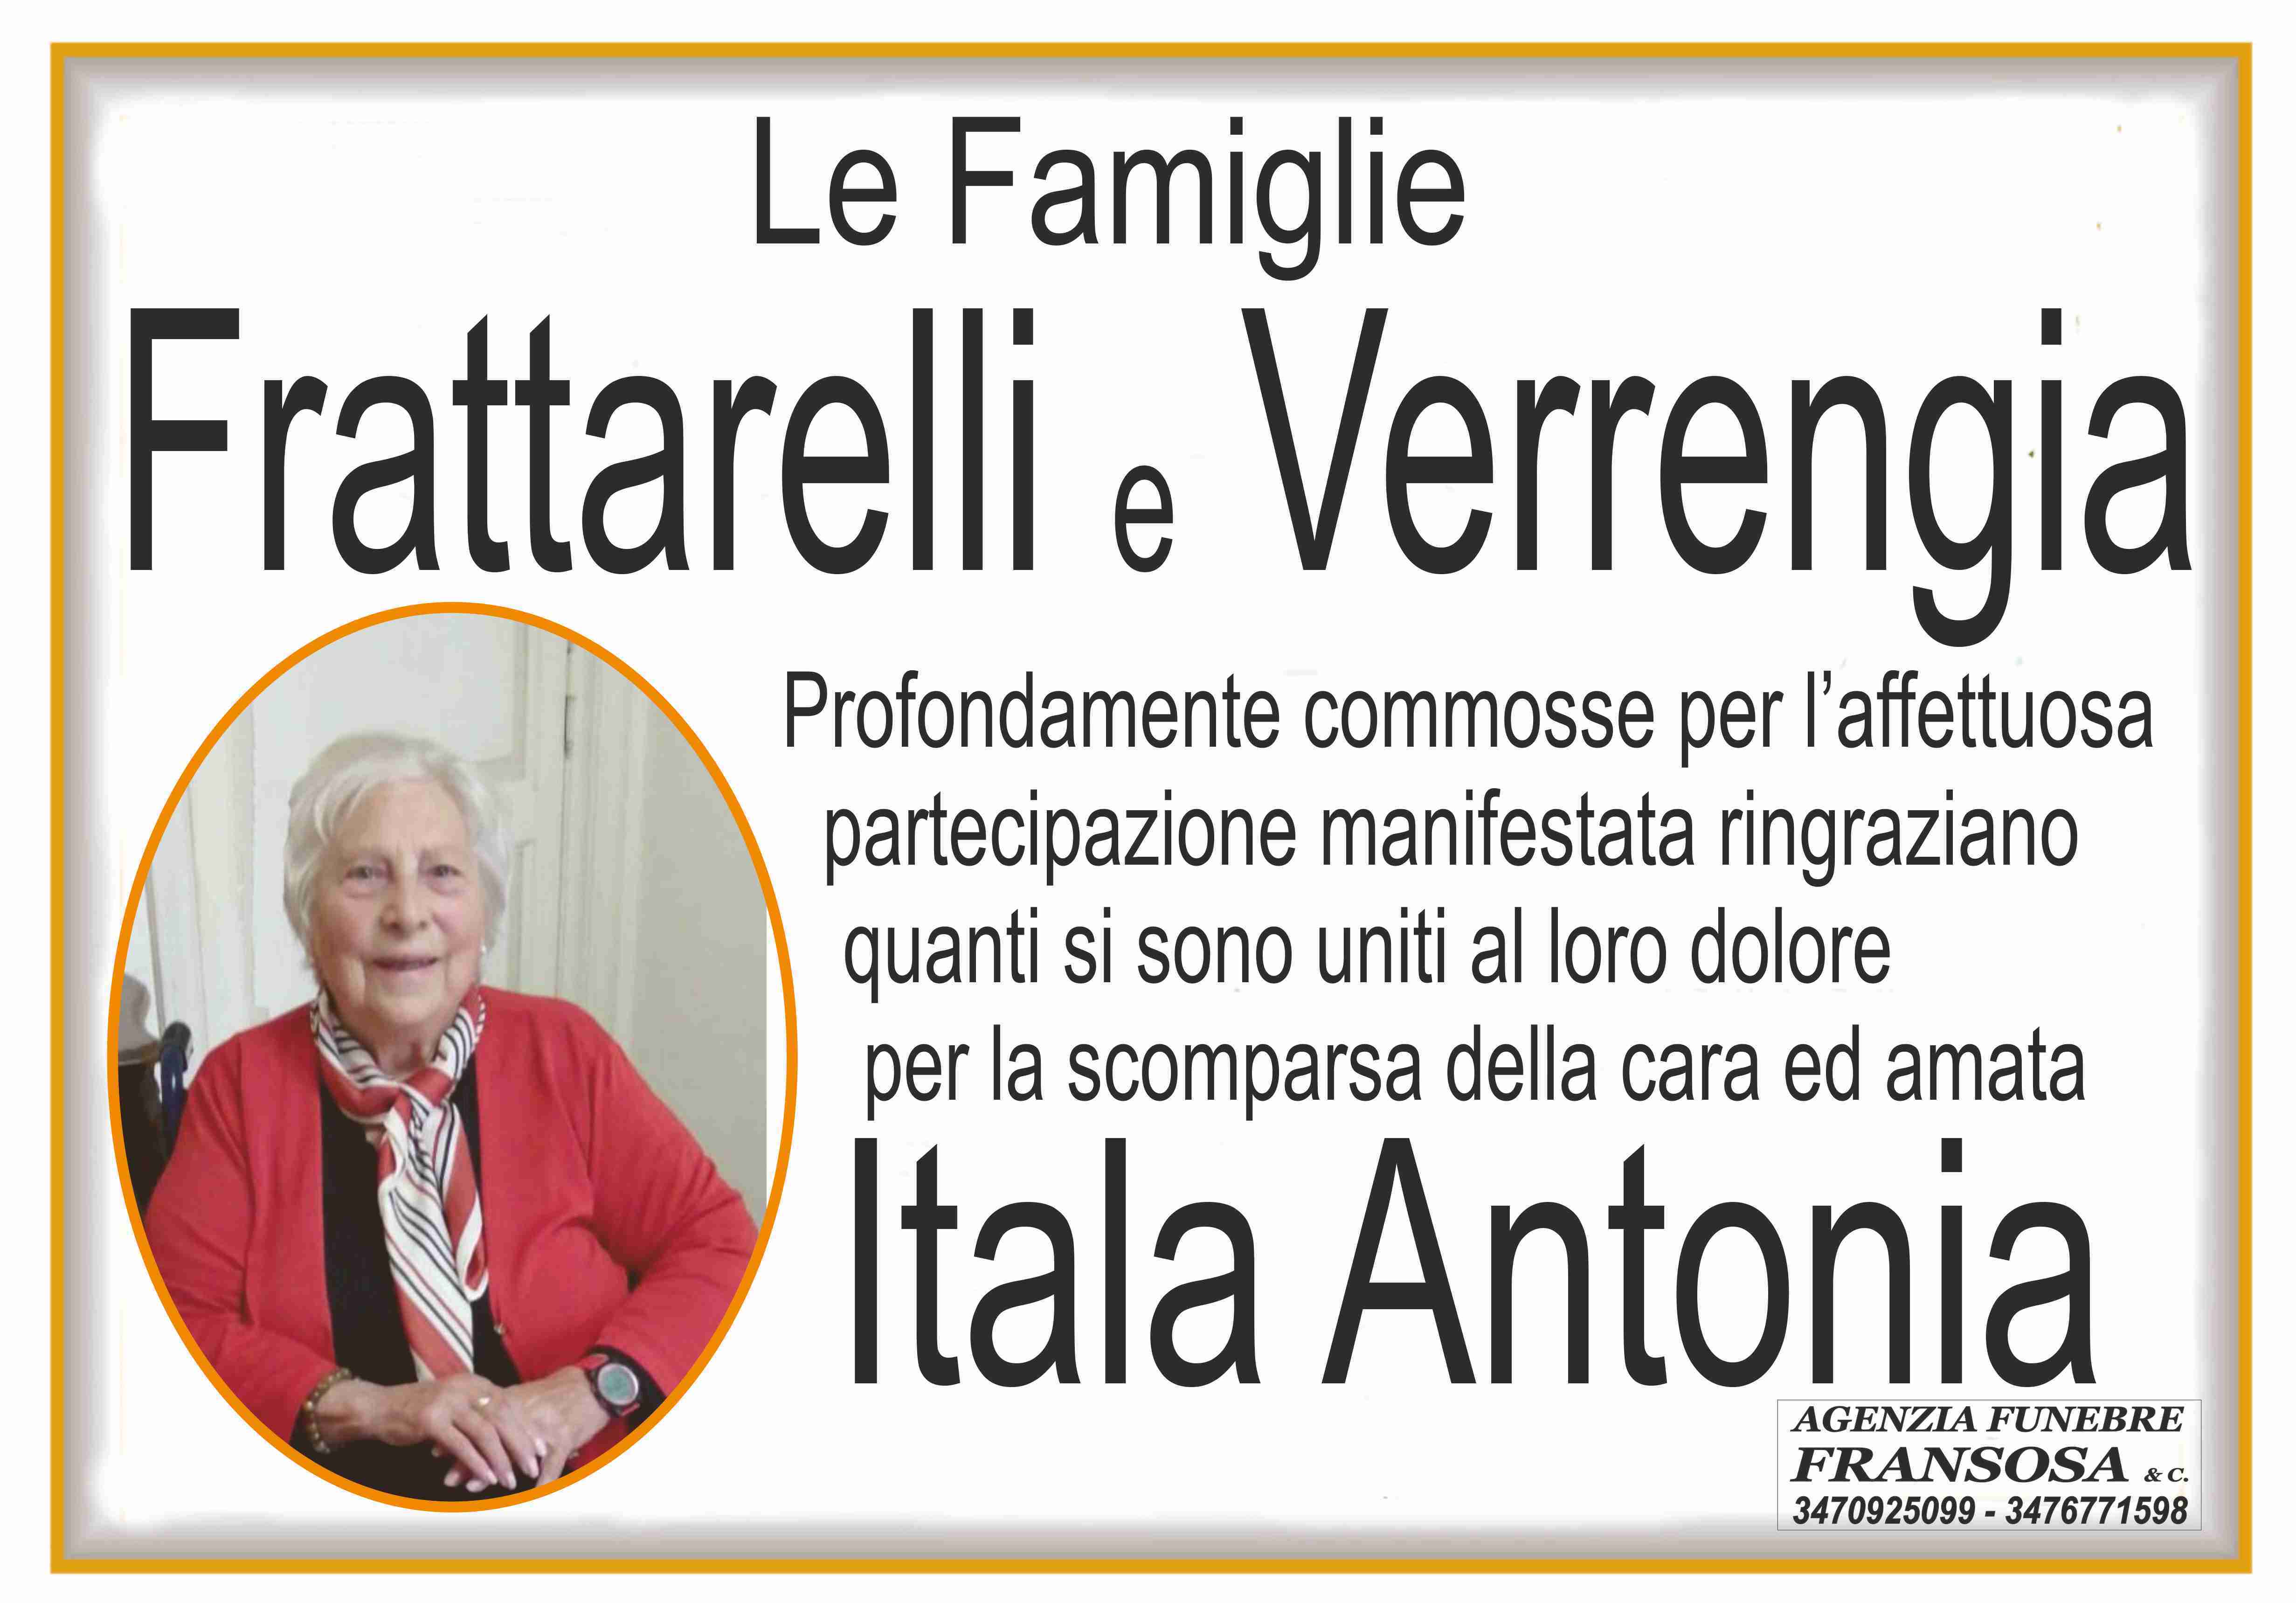 Itala Antonia Verrengia